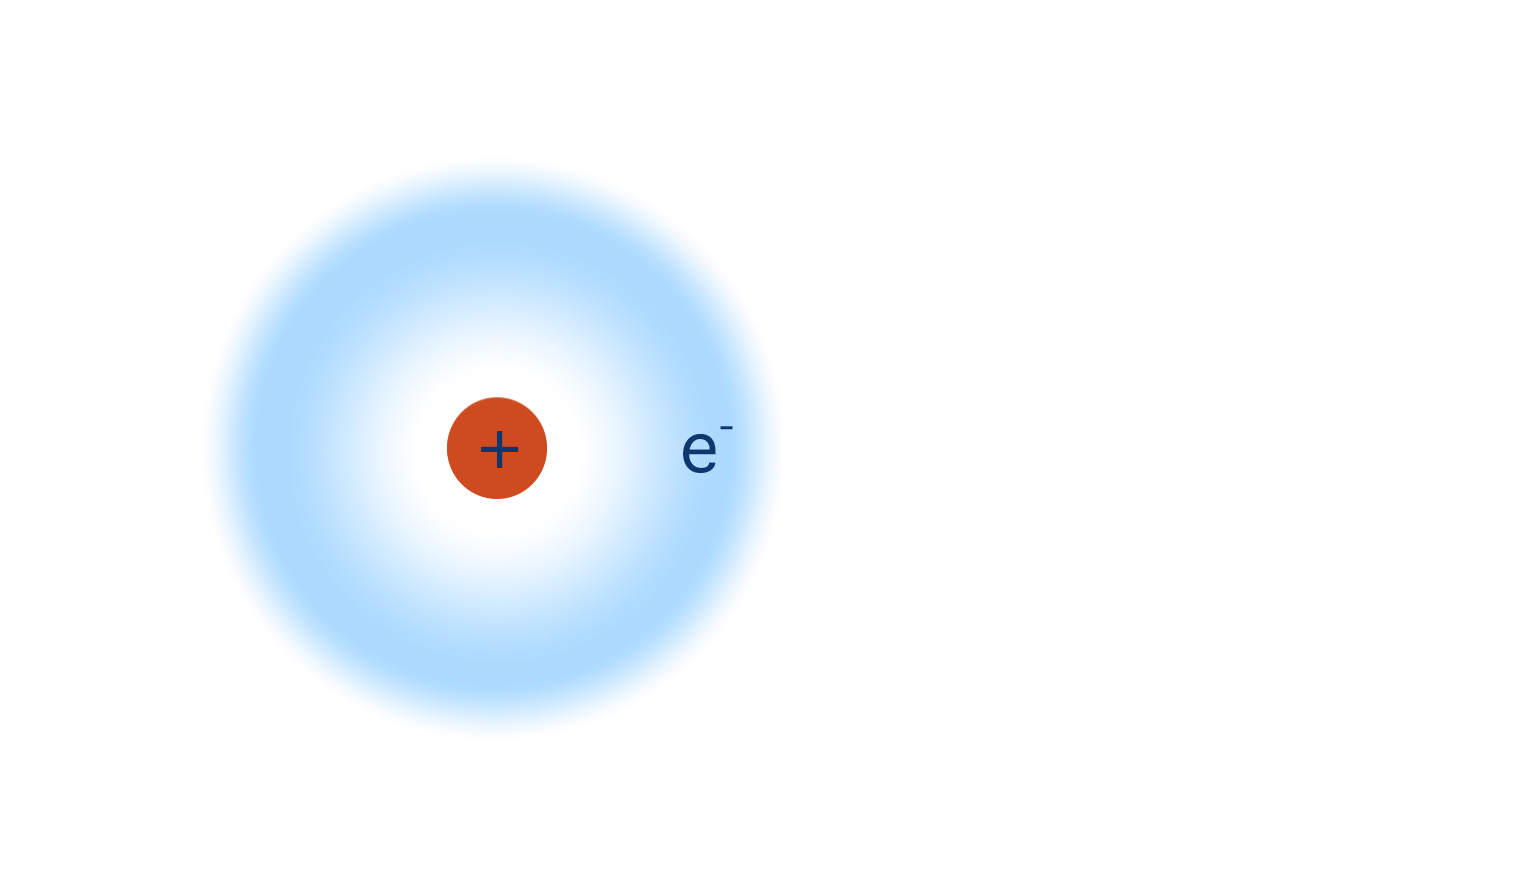 hydrogen atom one electron proton nucleus